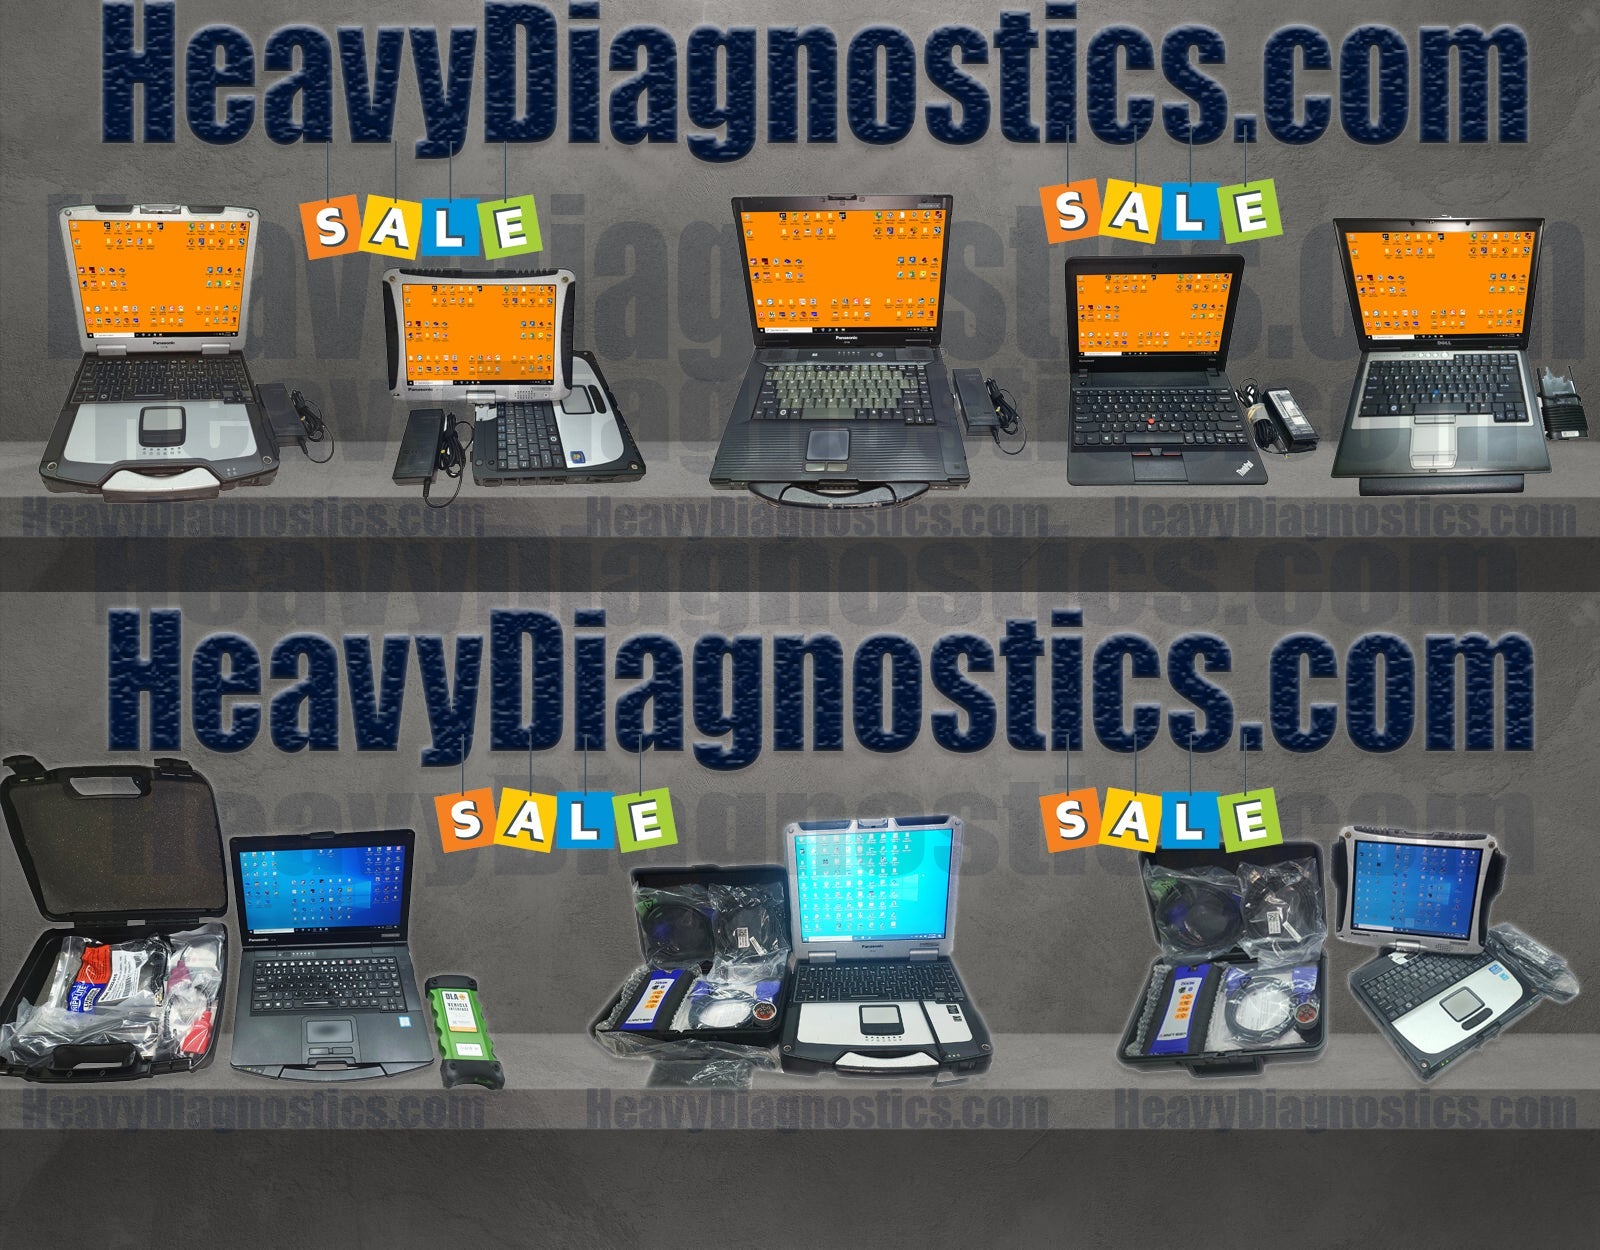 HeavyDiagnostics.com Shop All Products